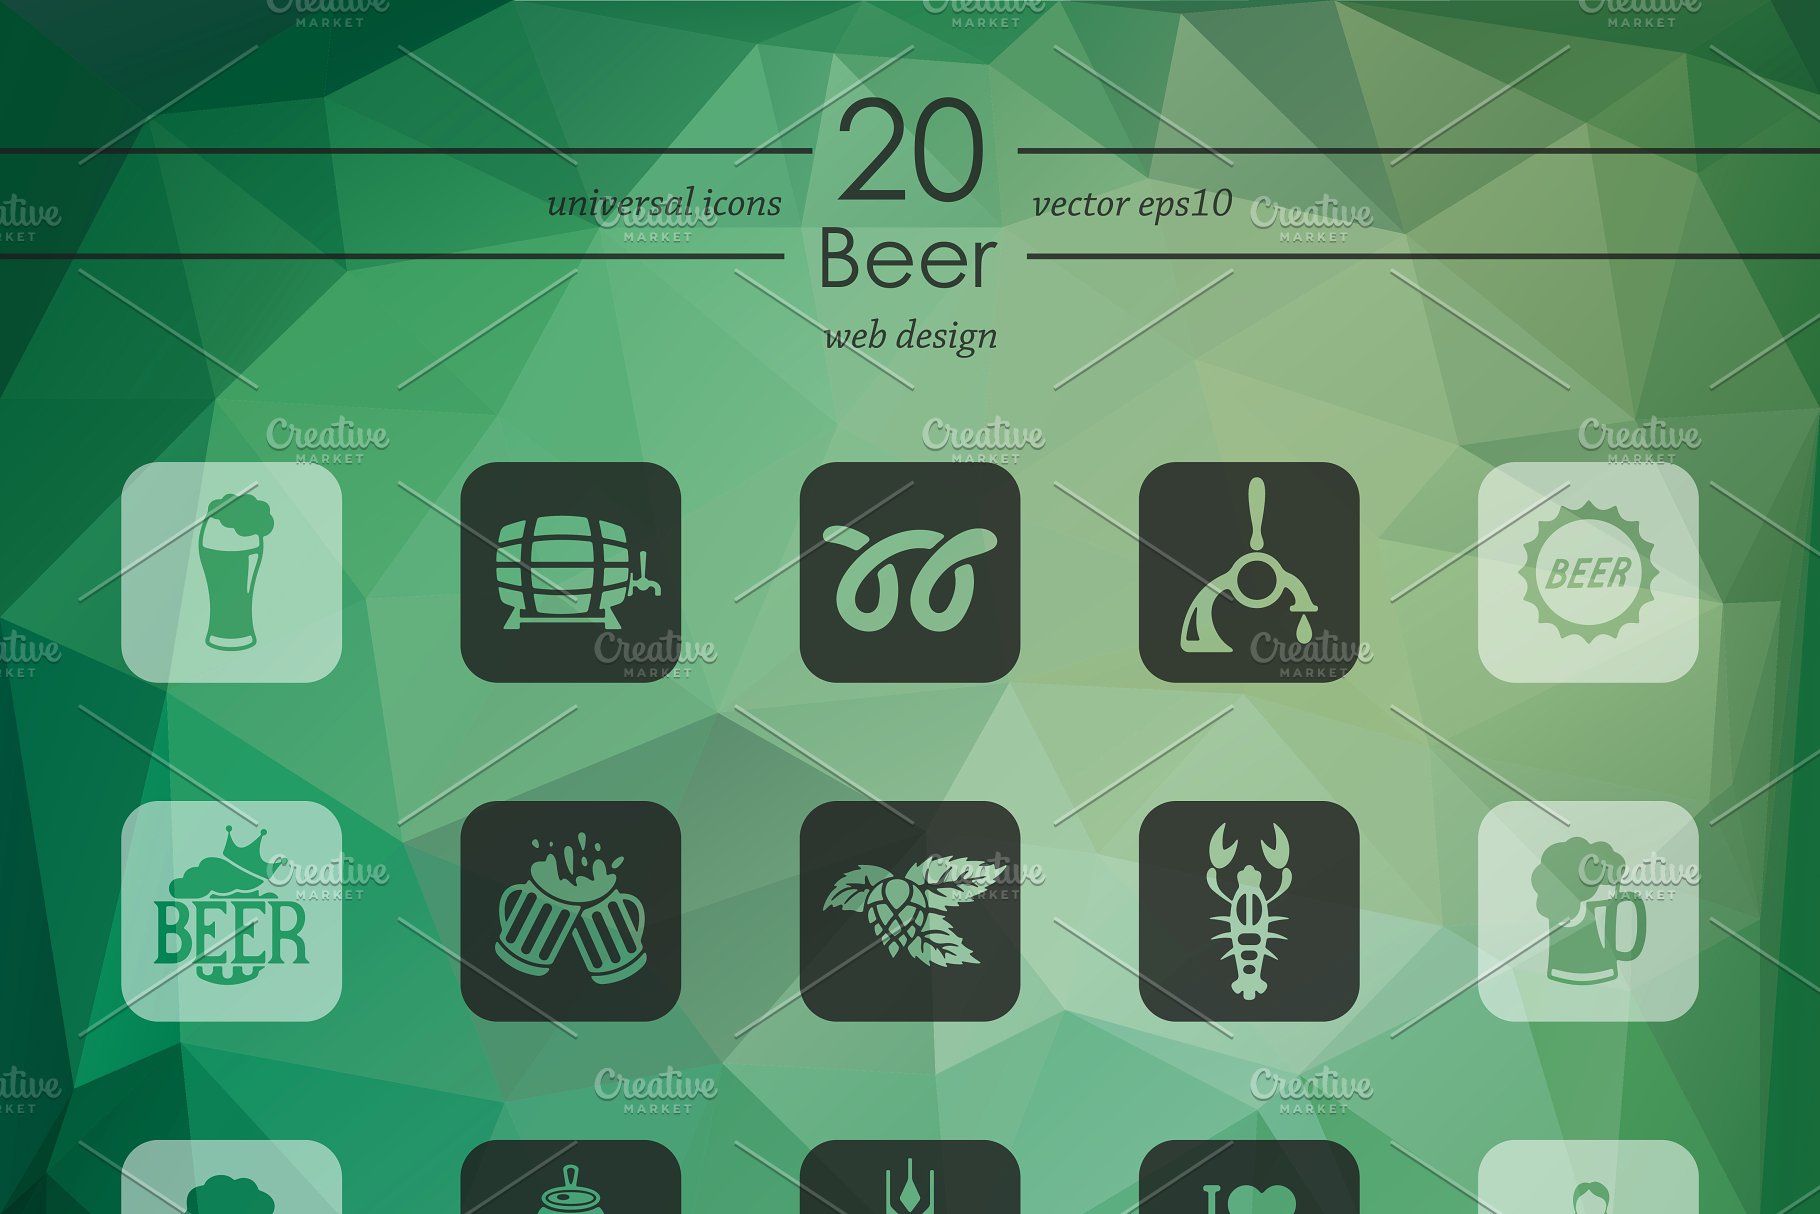 啤酒主题图标 Set of beer icons #9107